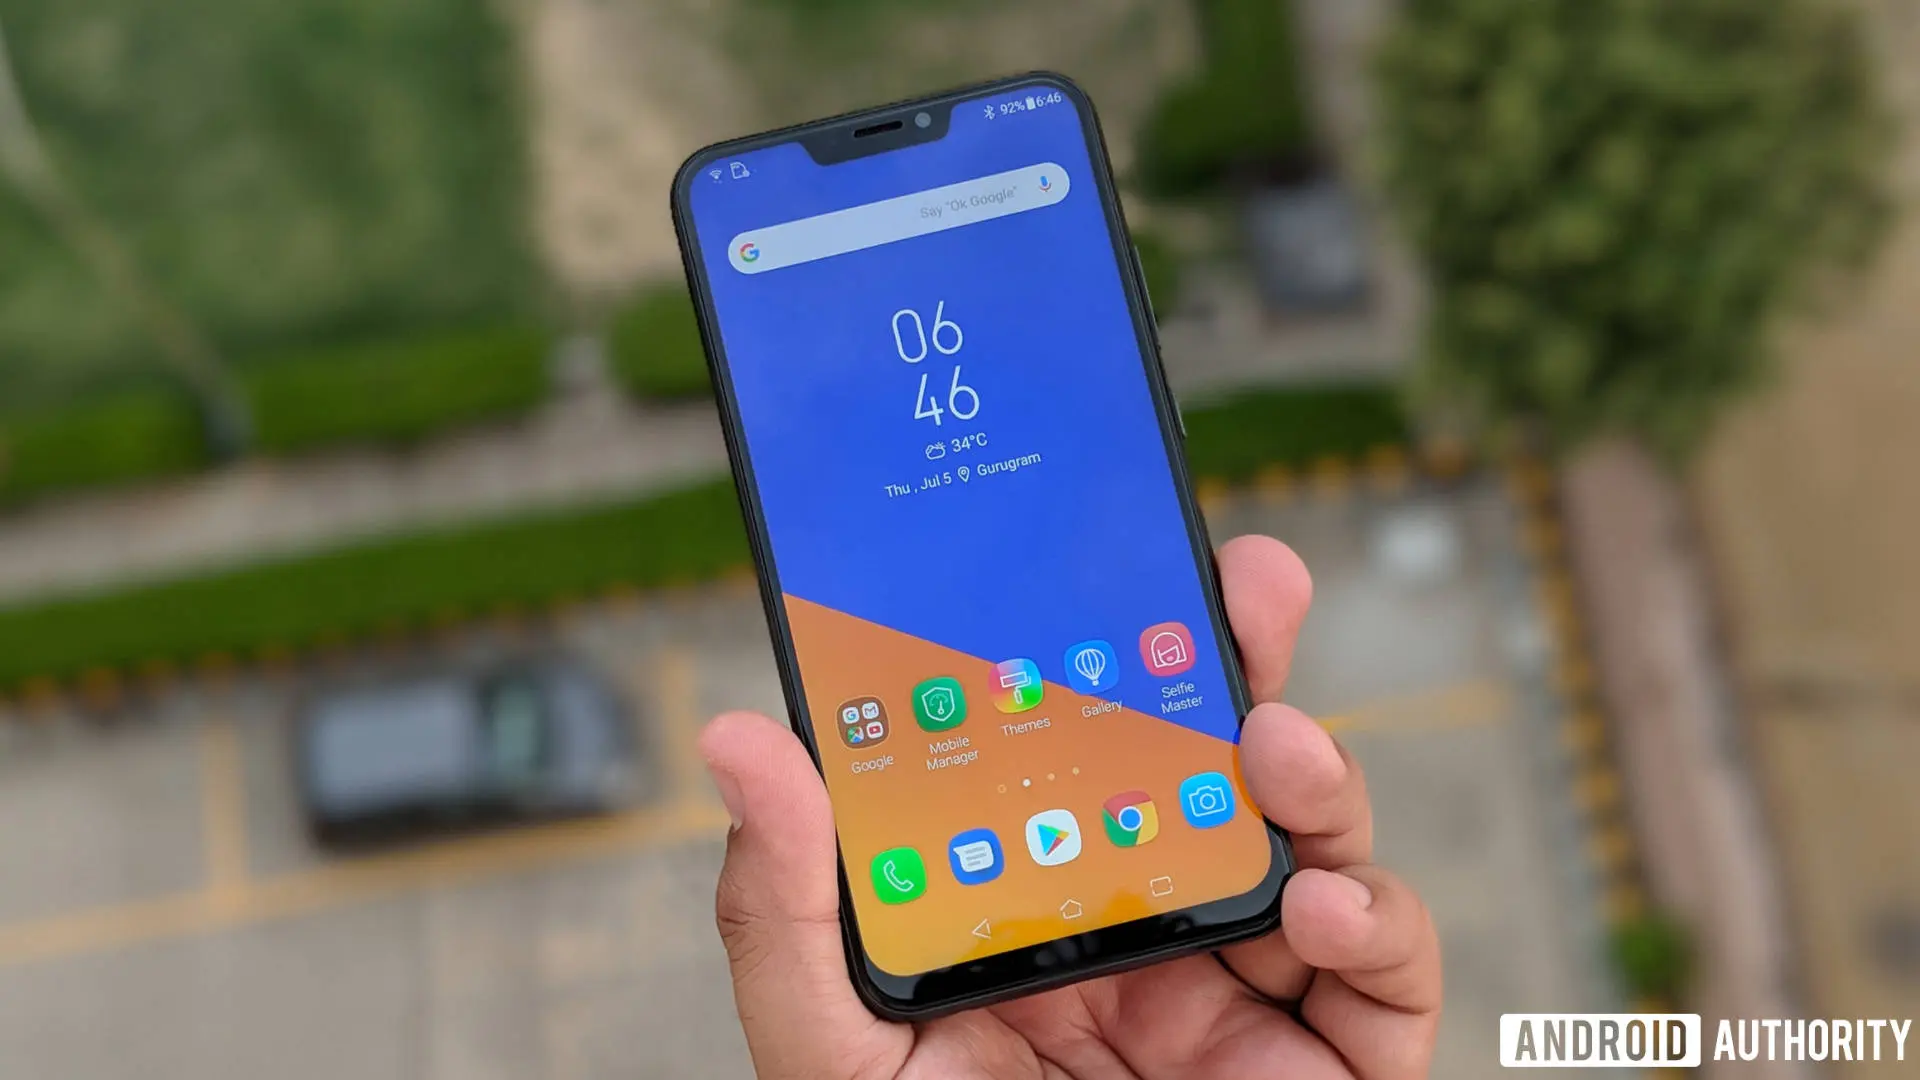 ASUS confirma los smartphones que recibirán Android 9 Pie en este 2019